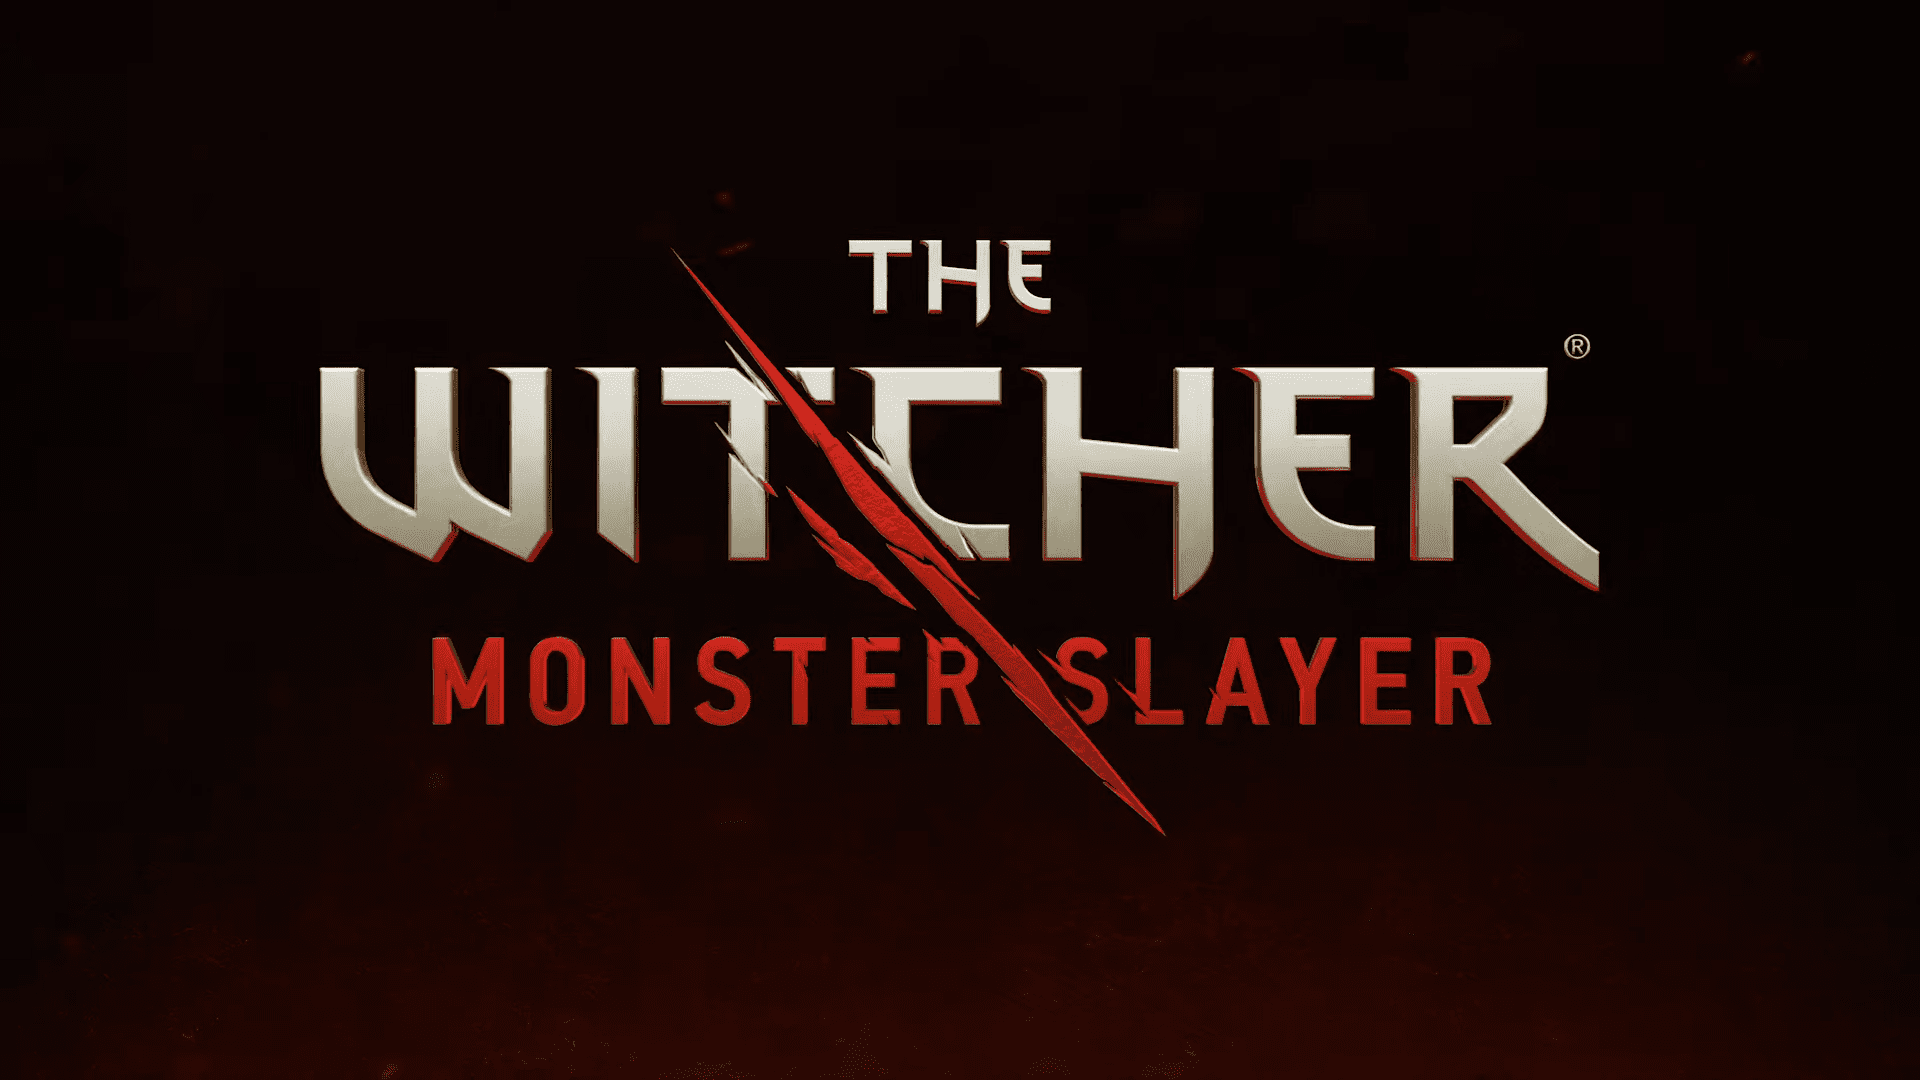 The Witcher: Monster Slayer, ein mobiler Hexer im Pokémon GO-Stil, hat ein Erscheinungsdatum erhalten. Es kommt bald! 269